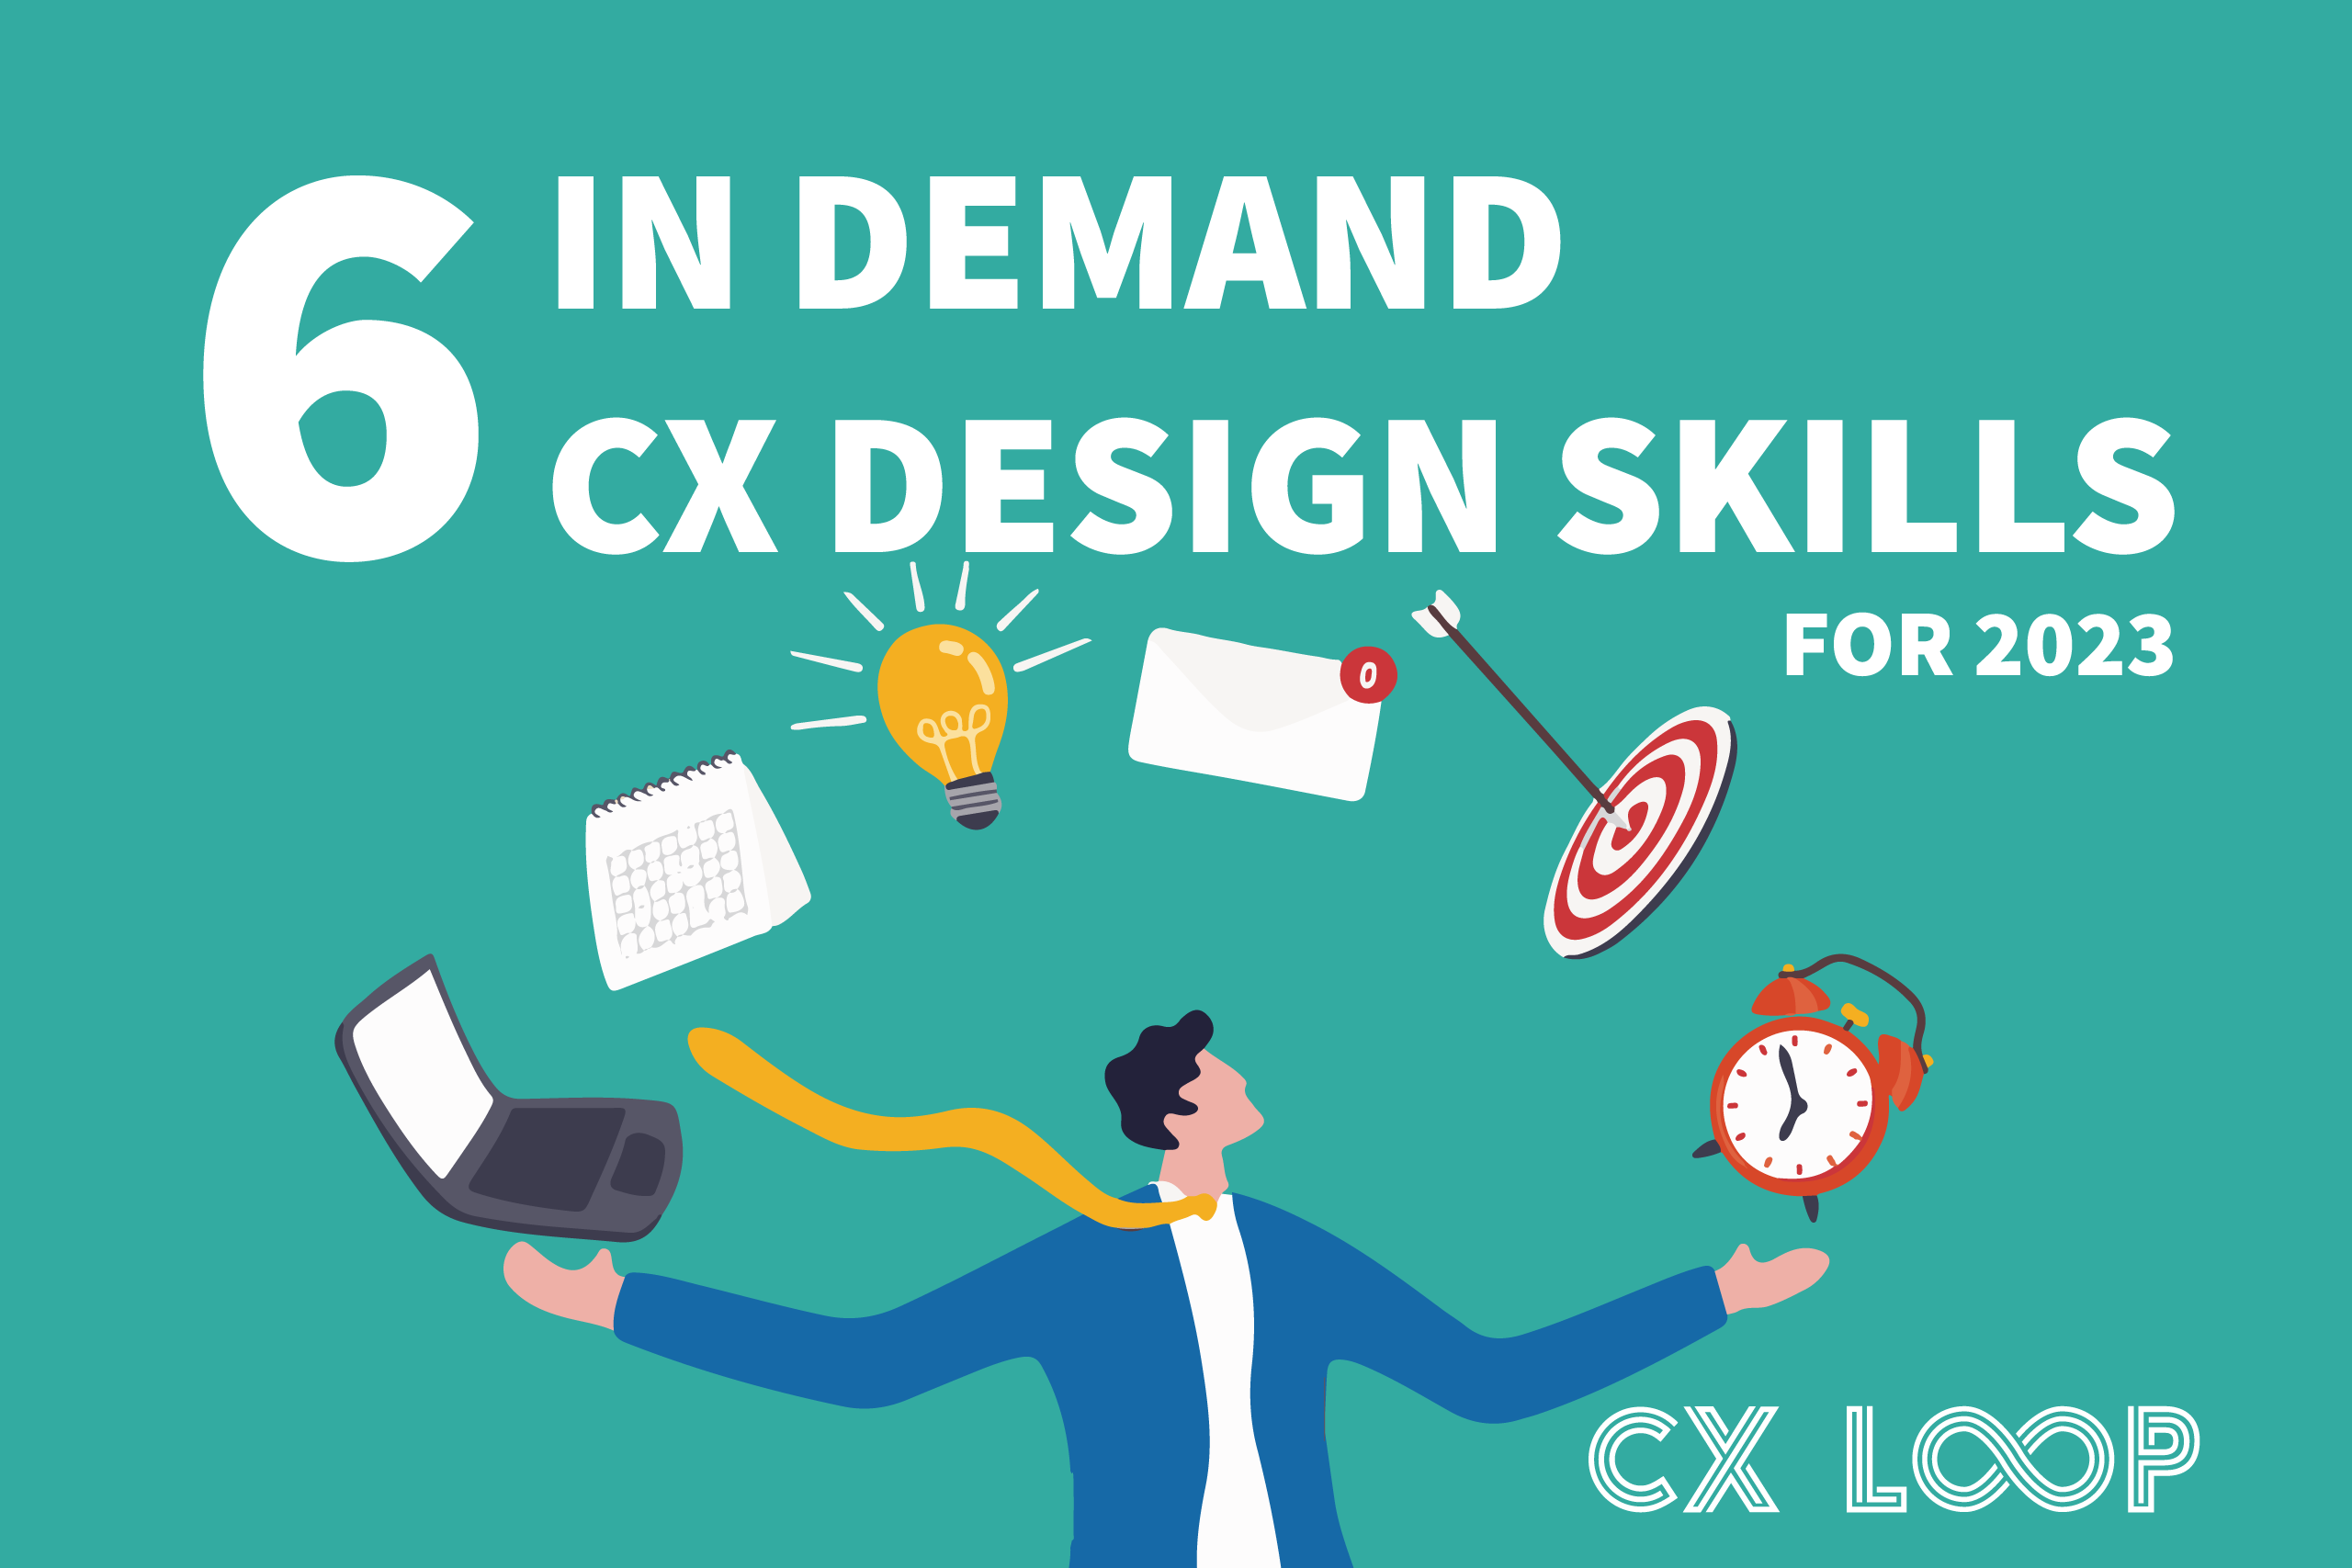 6 in demand CX design skills 2023.